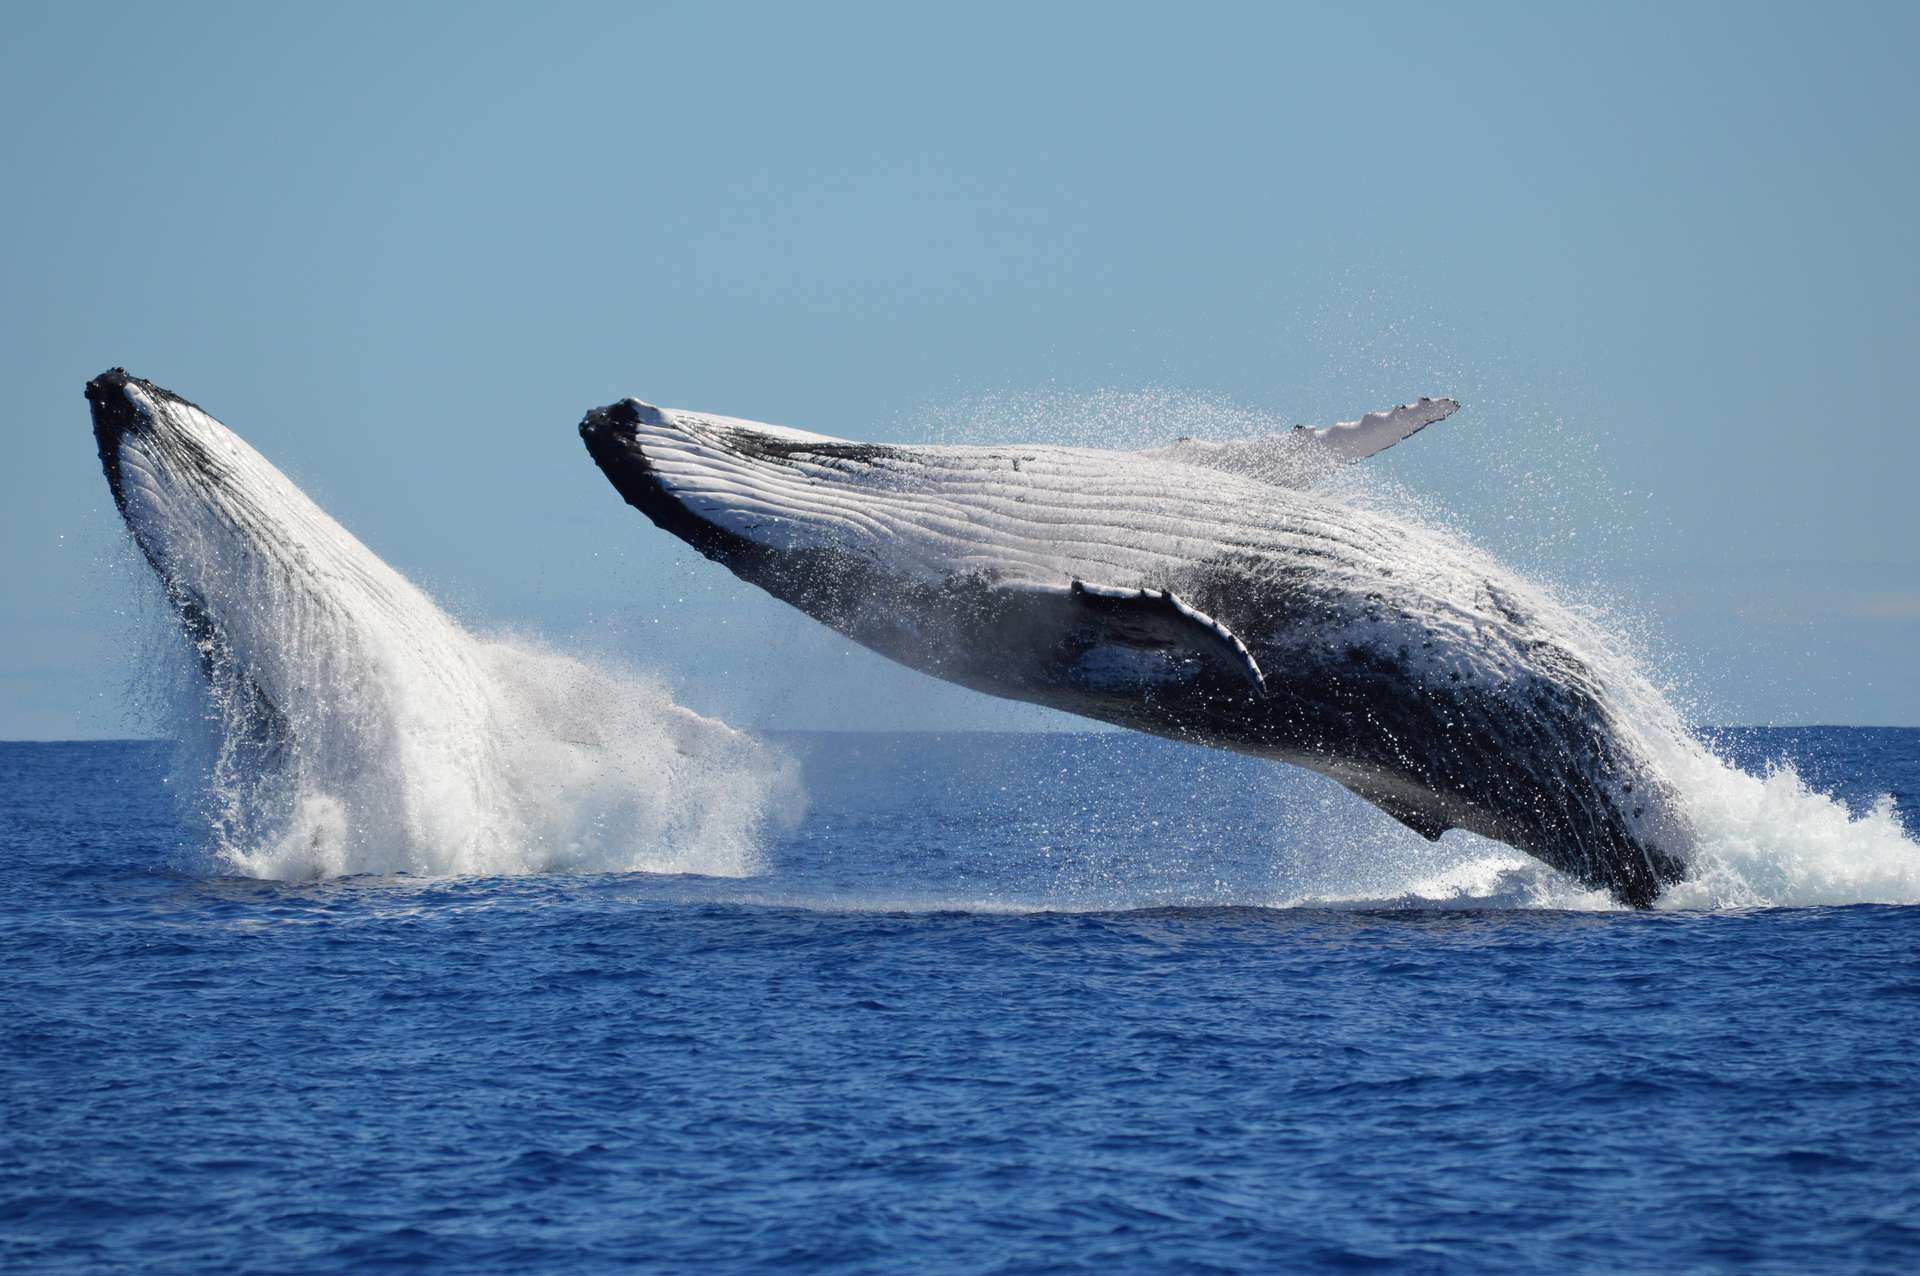 Ces images de la danse amoureuse entre 2 baleines à bosse sont une première à plus d’un titre !